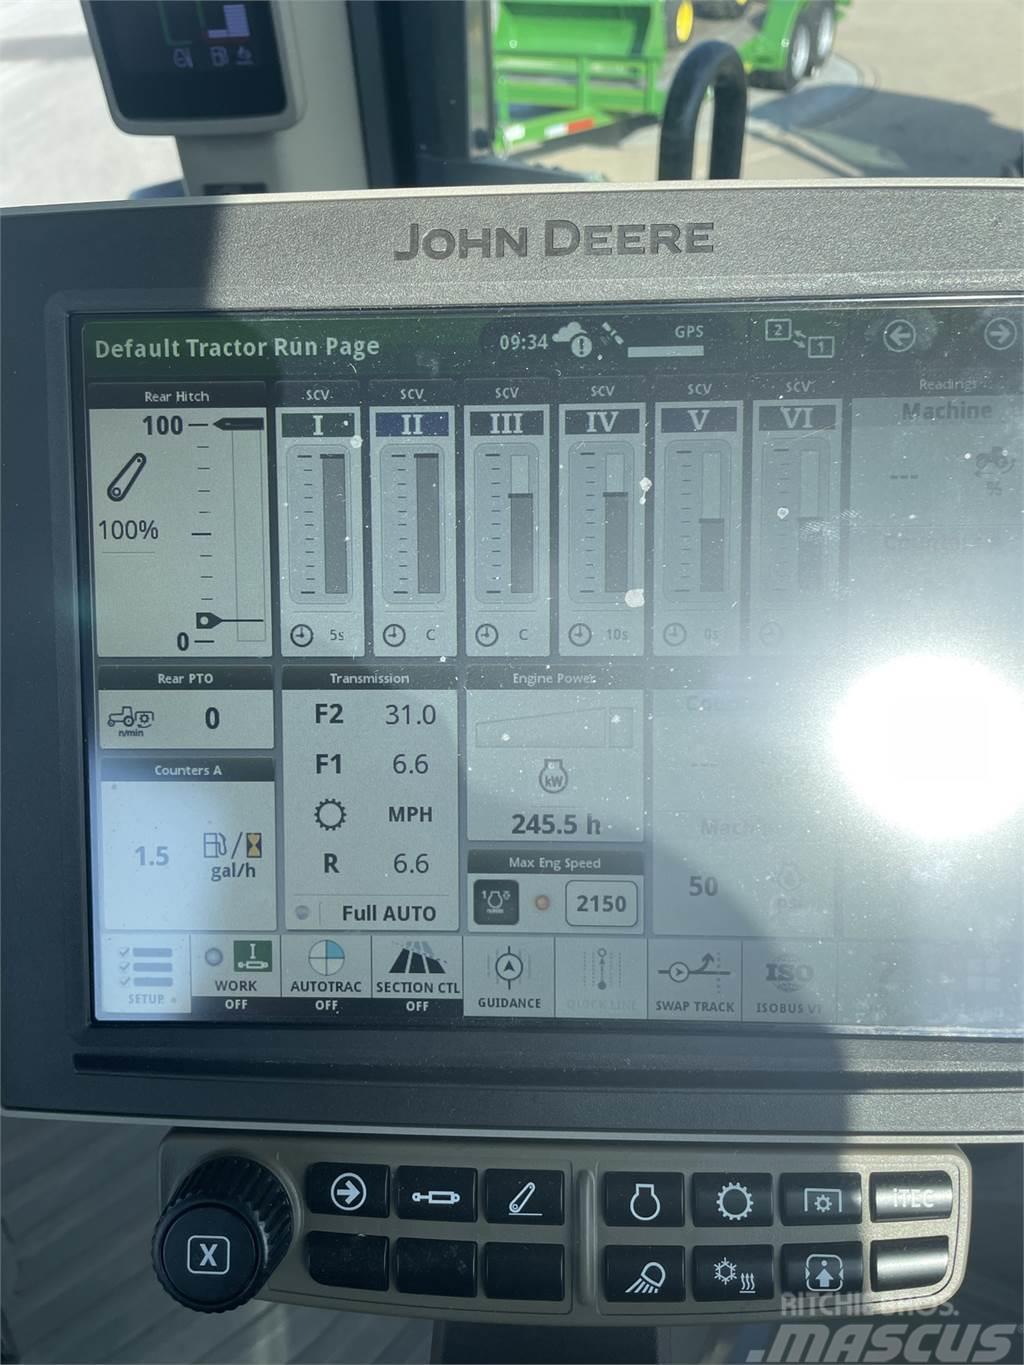 John Deere 8R 340 Traktorji